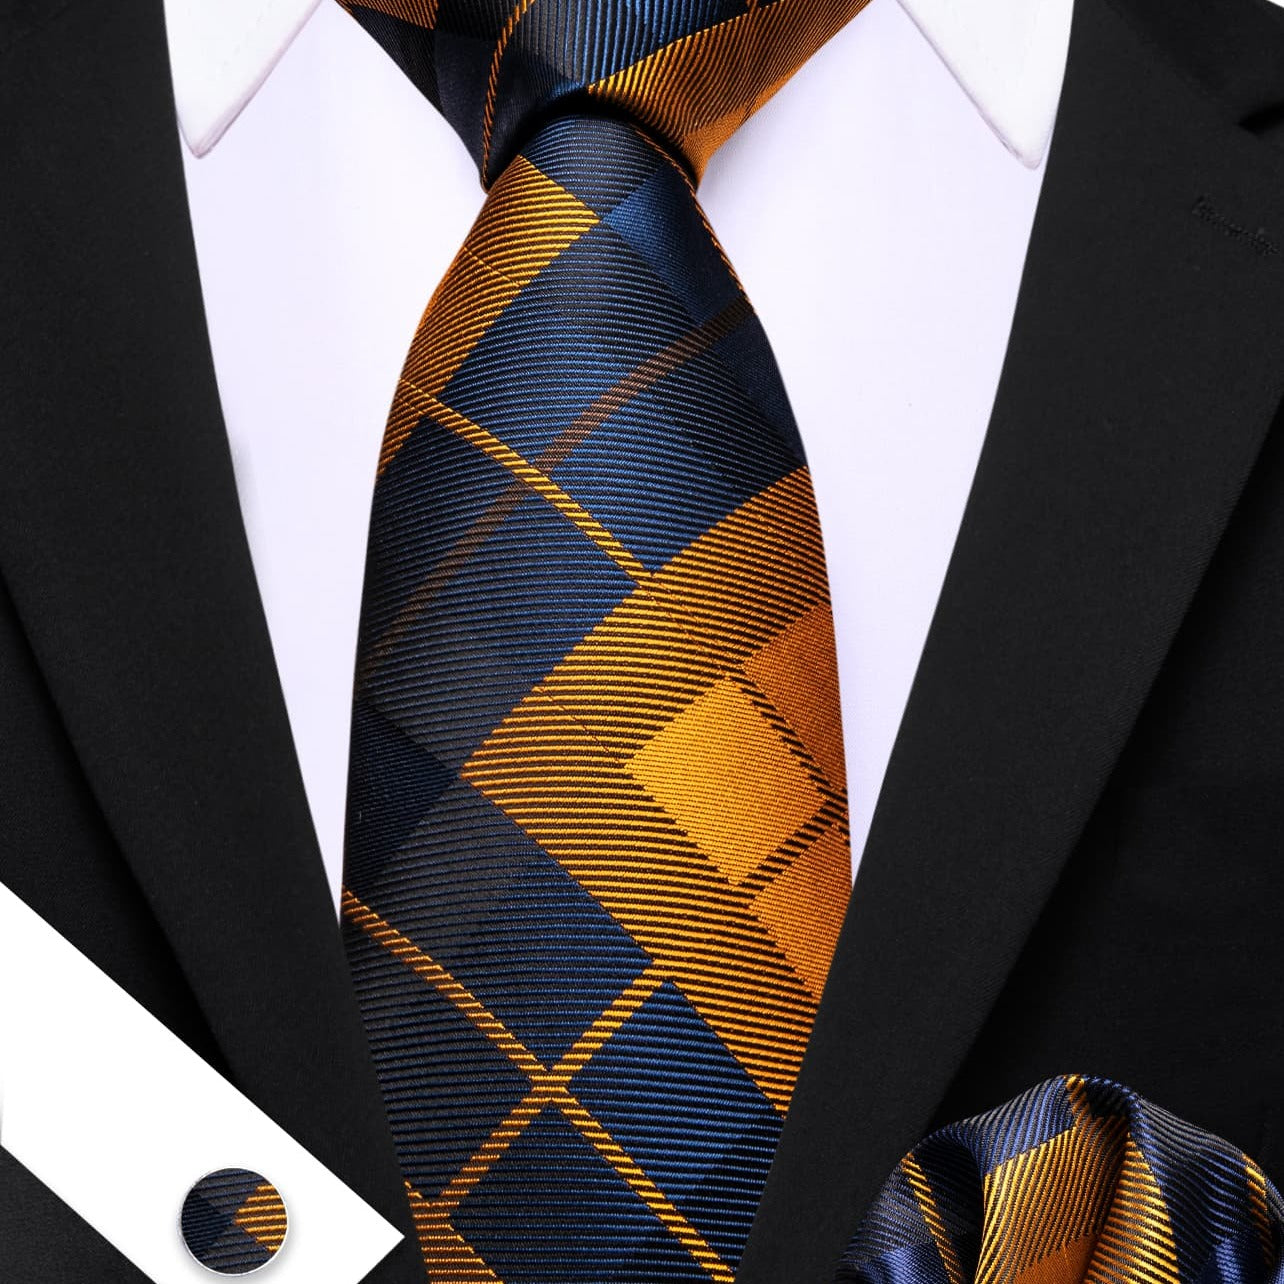  Plaid Tie Blue Golden Checkered Necktie and Cufflink Set